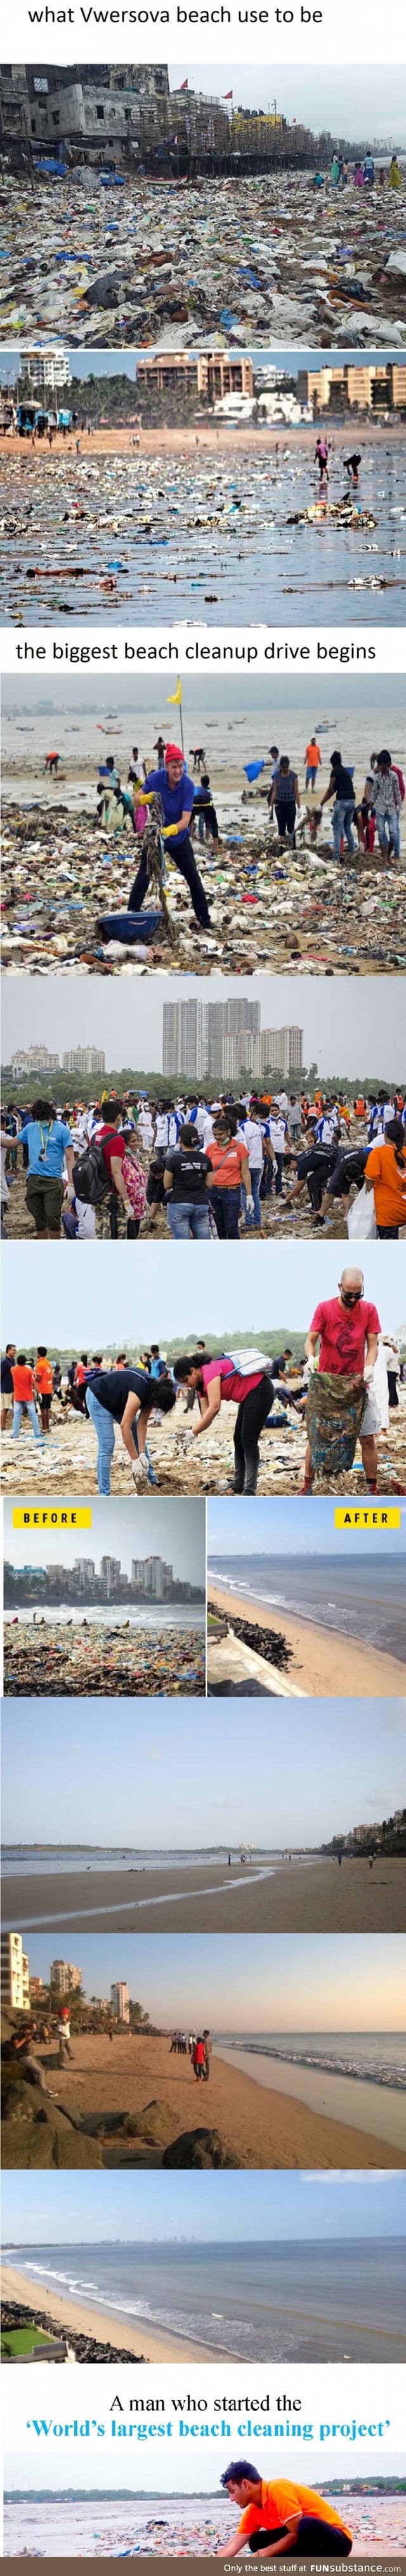 1 Year, 1,500 People, 3 Million Tons Of Trash on Mumbai's Versova Beach